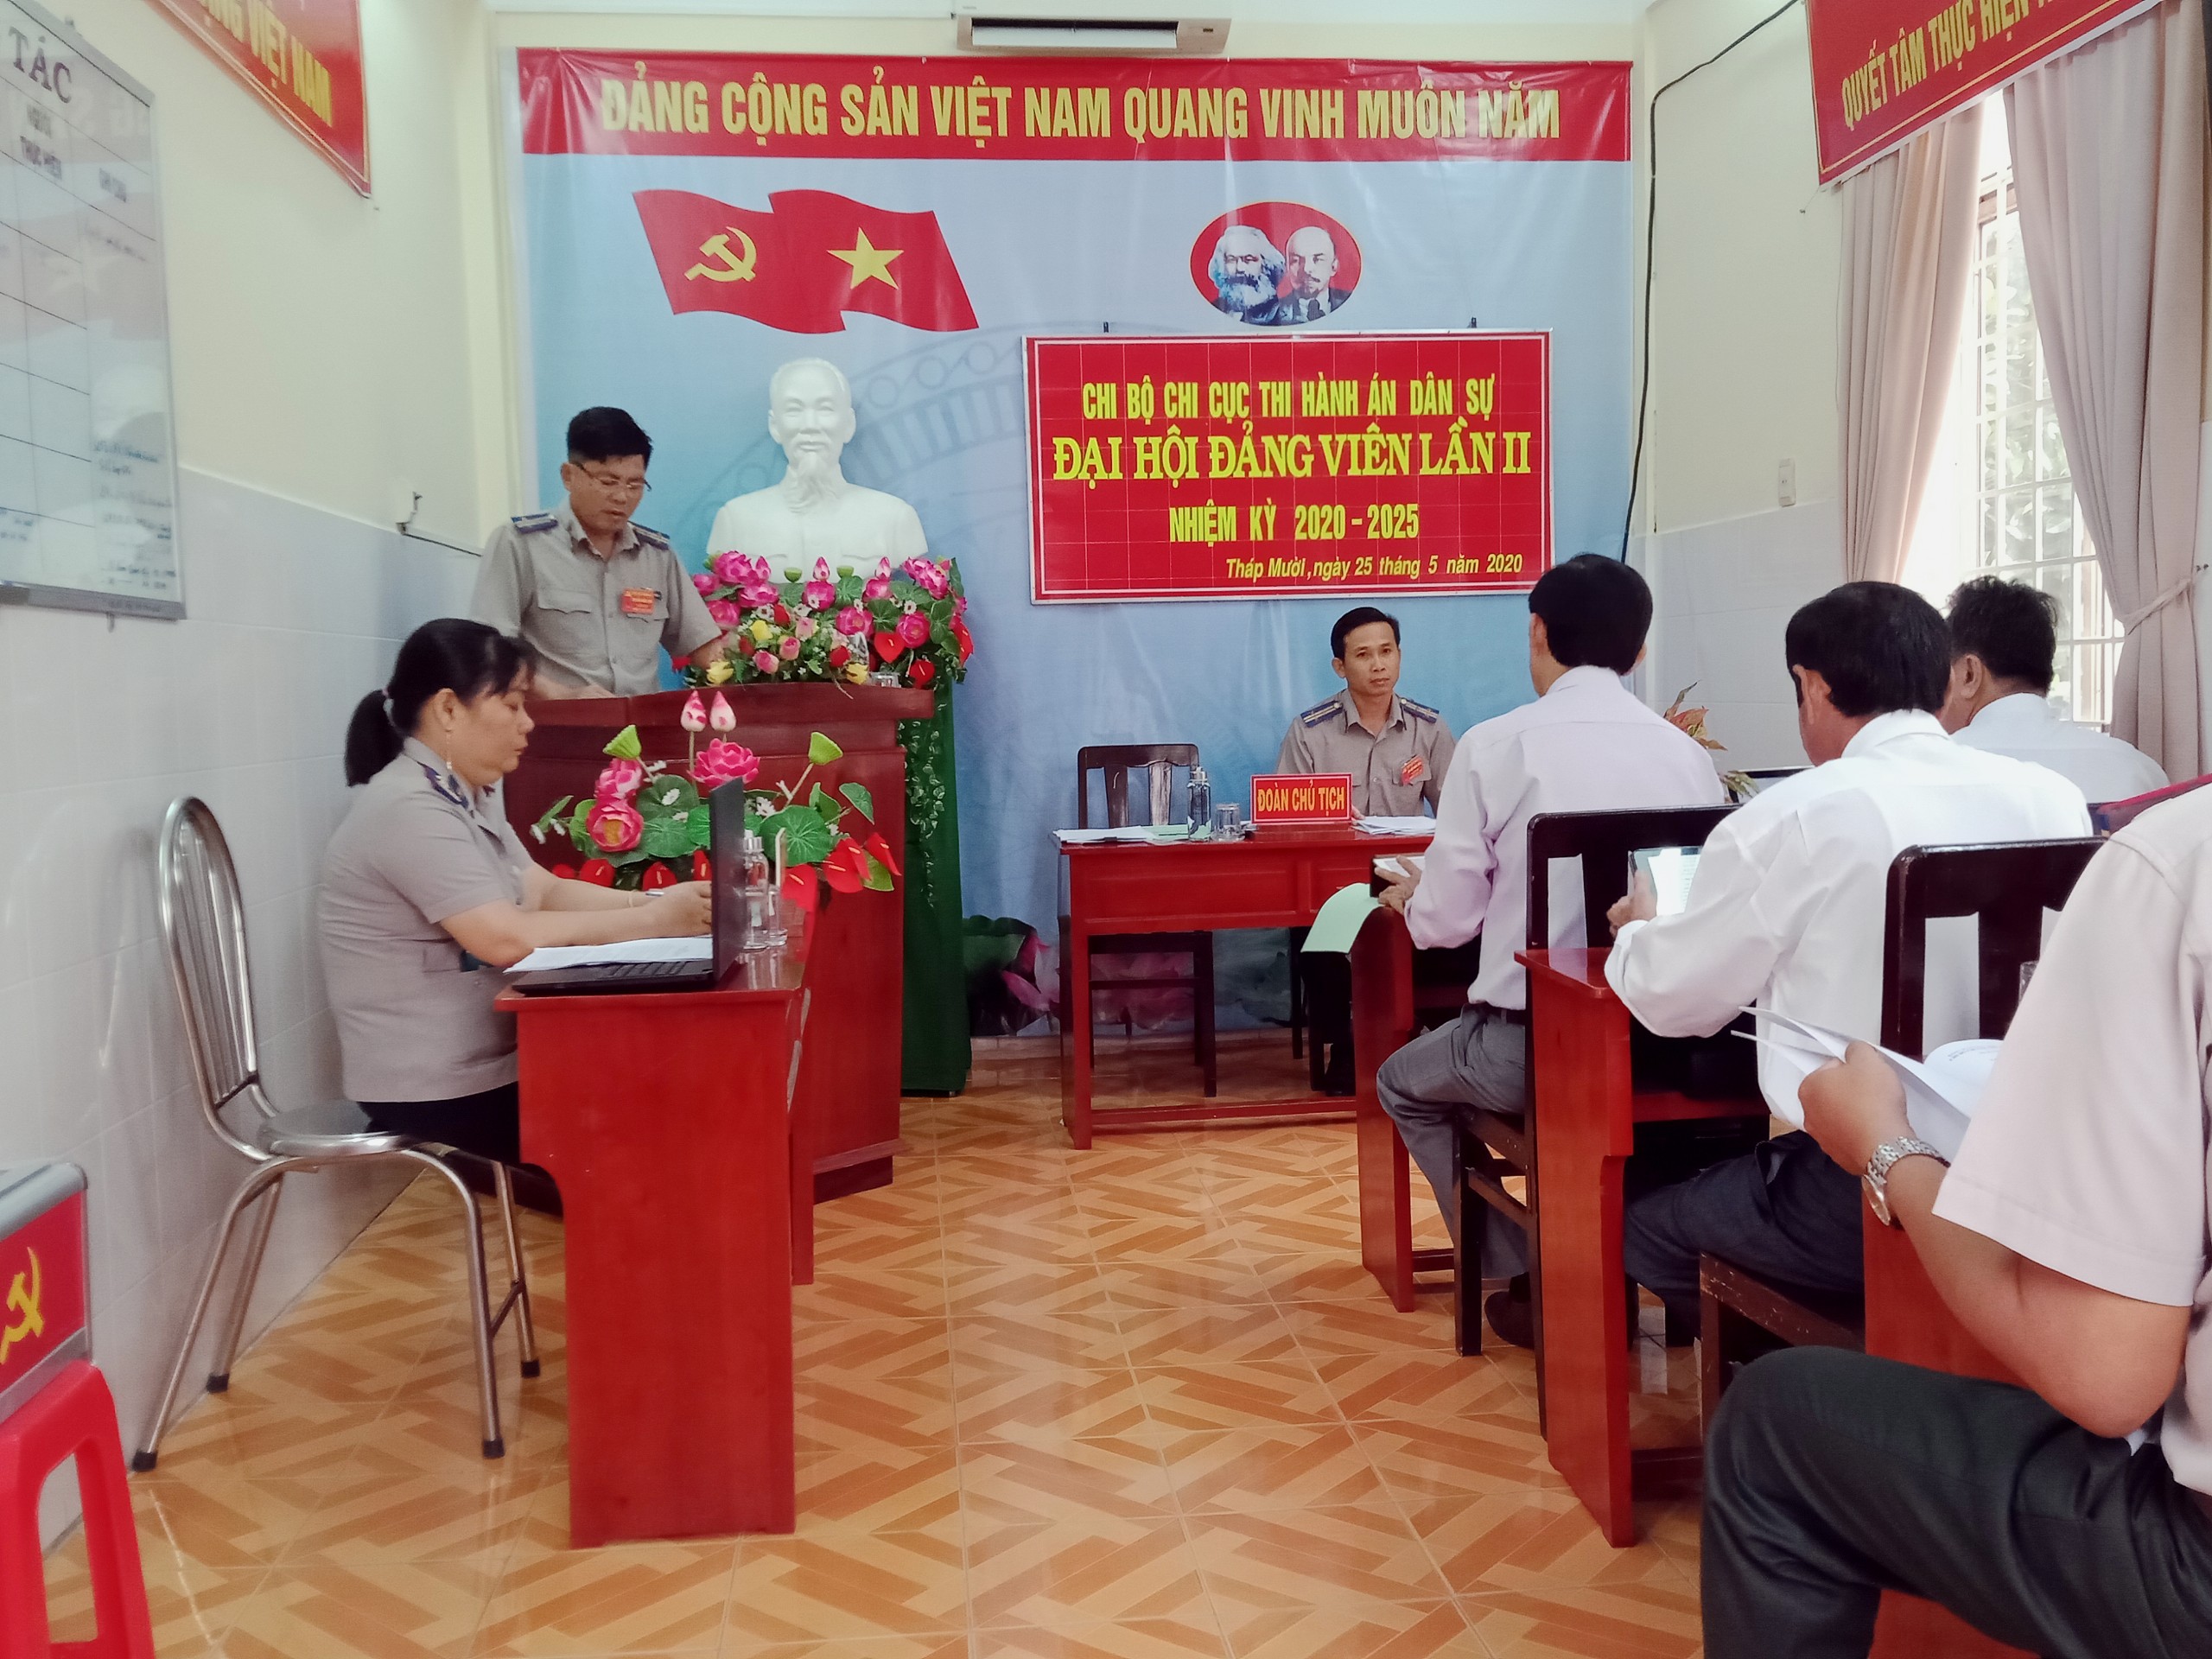 Chi bộ Chi cục Thi hành án dân sự huyện Tháp Mười tổ chức Đại hội Đảng viên lần thứ II, nhiệm kỳ 2020 - 2025